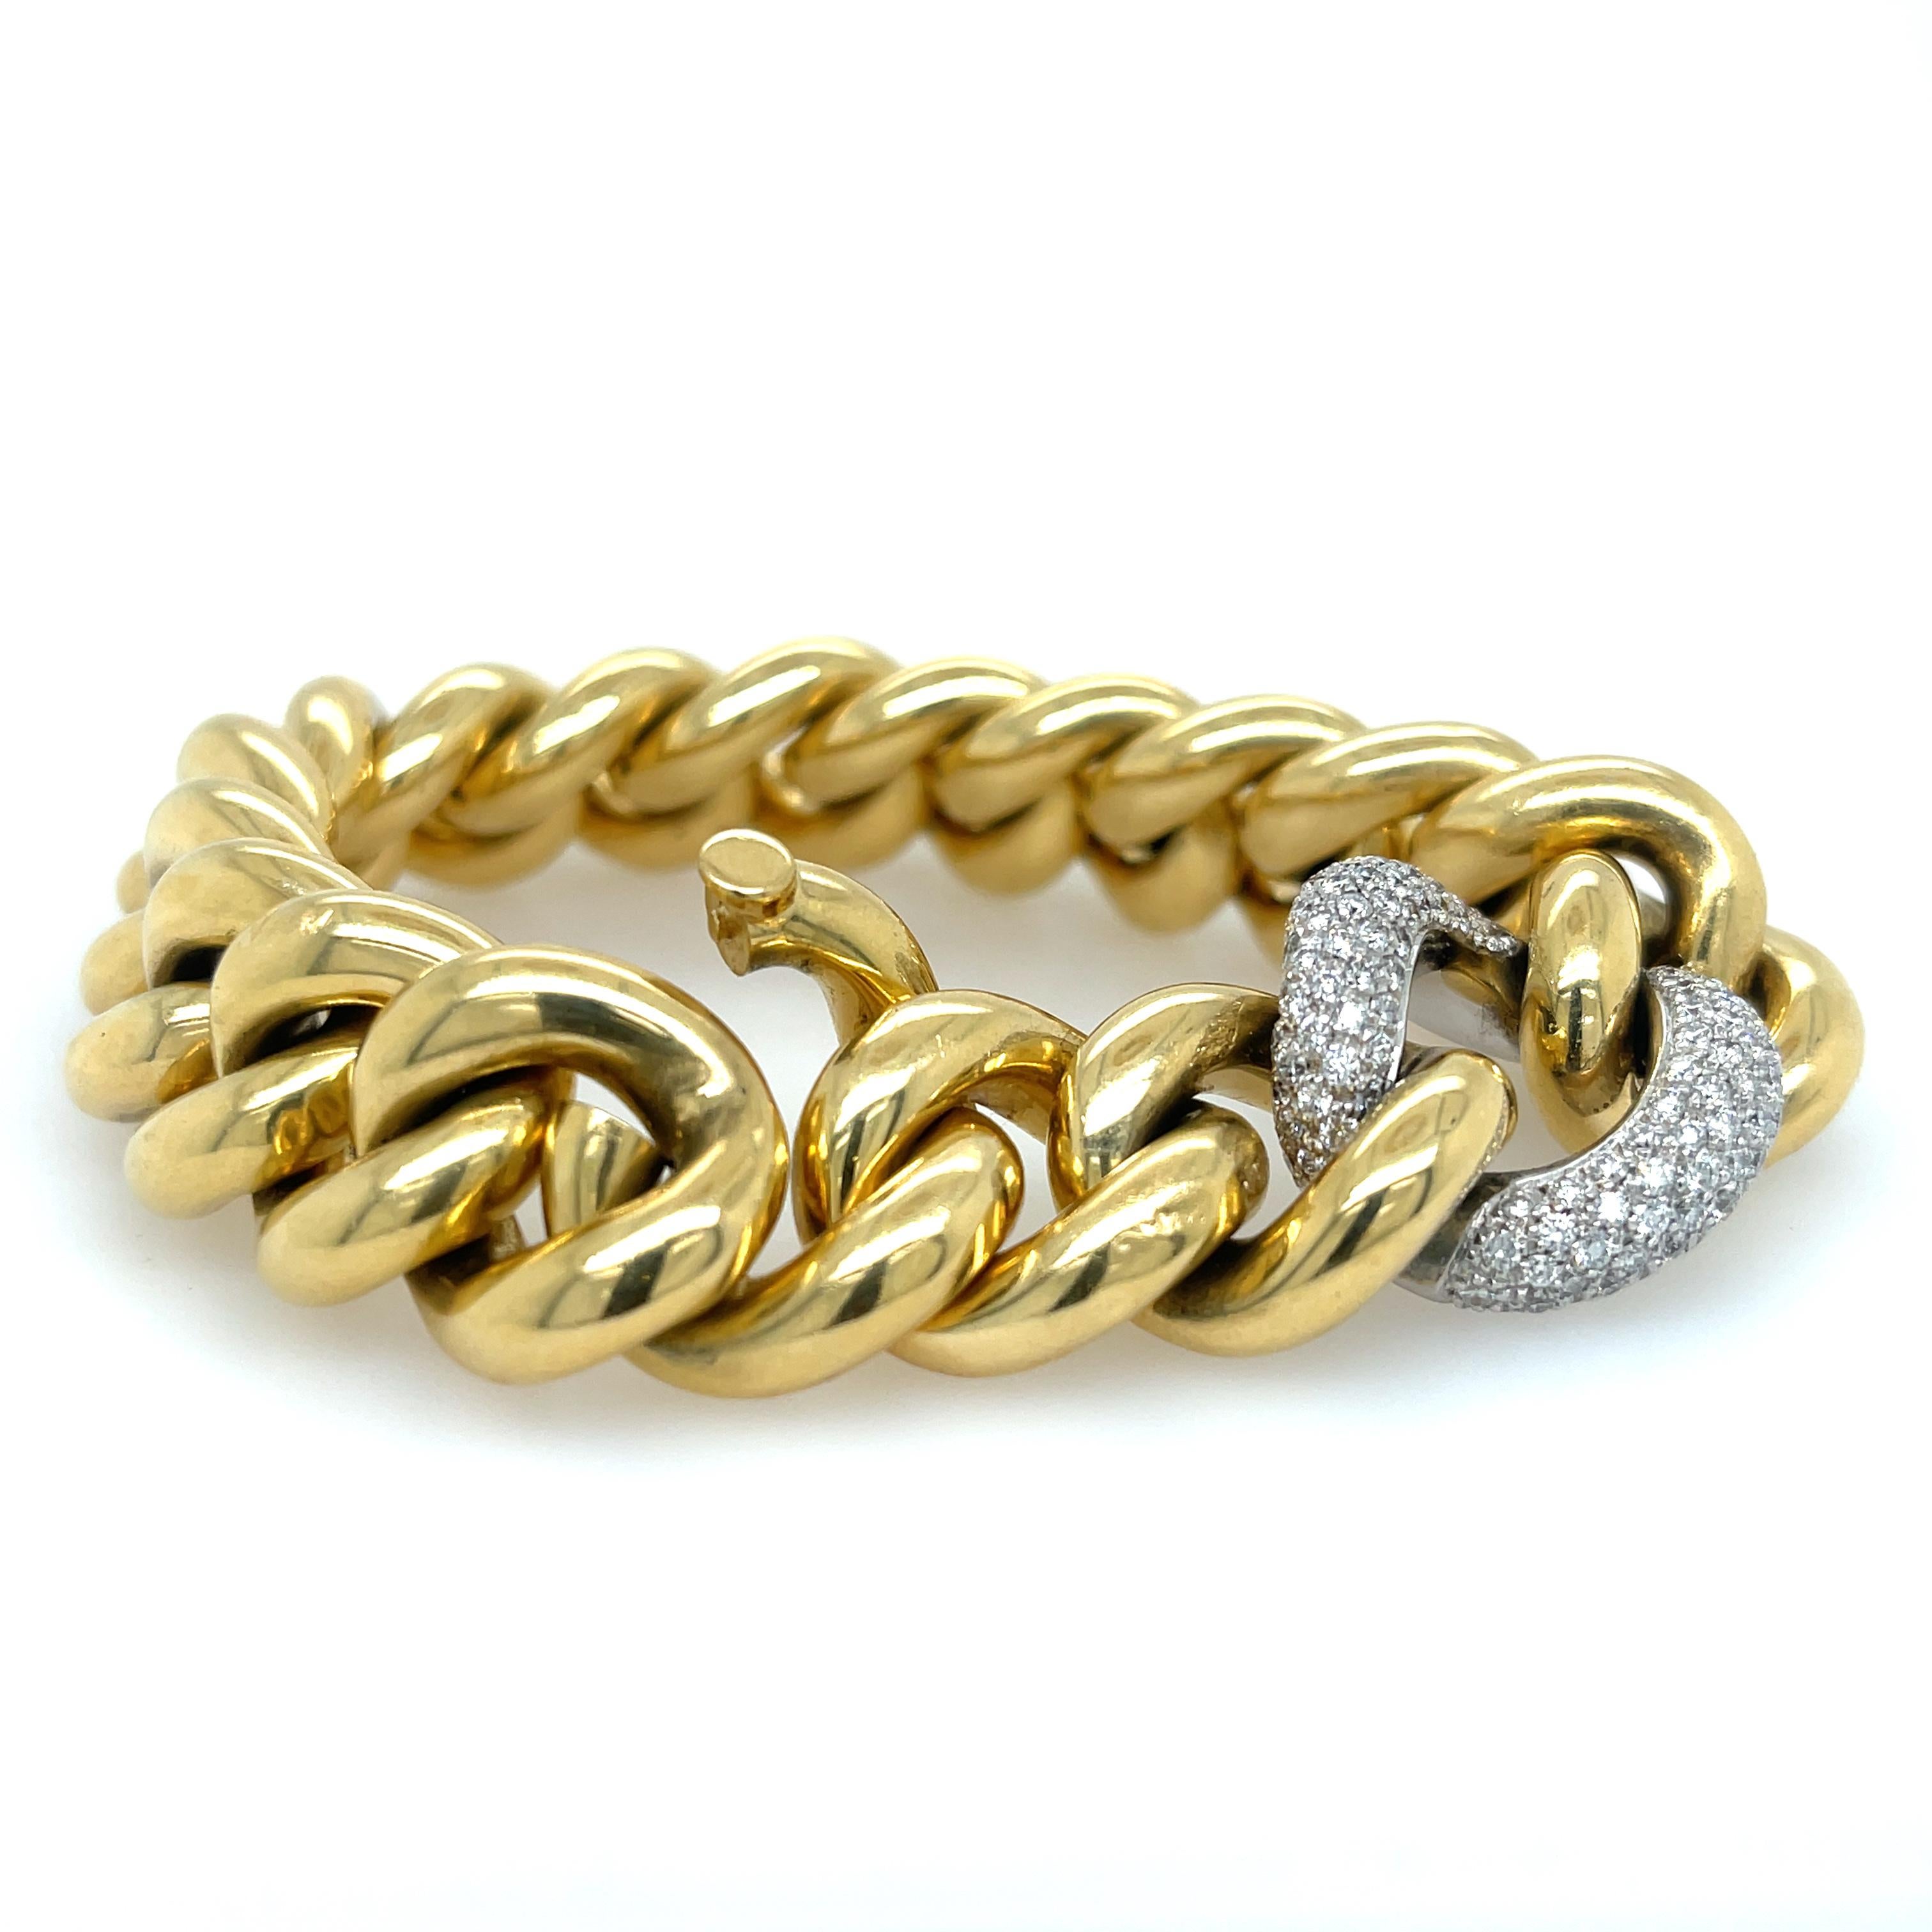 Bracelet à maillons avec diamants en or jaune 18 carats.
Longueur de 8,5 pouces
0,75